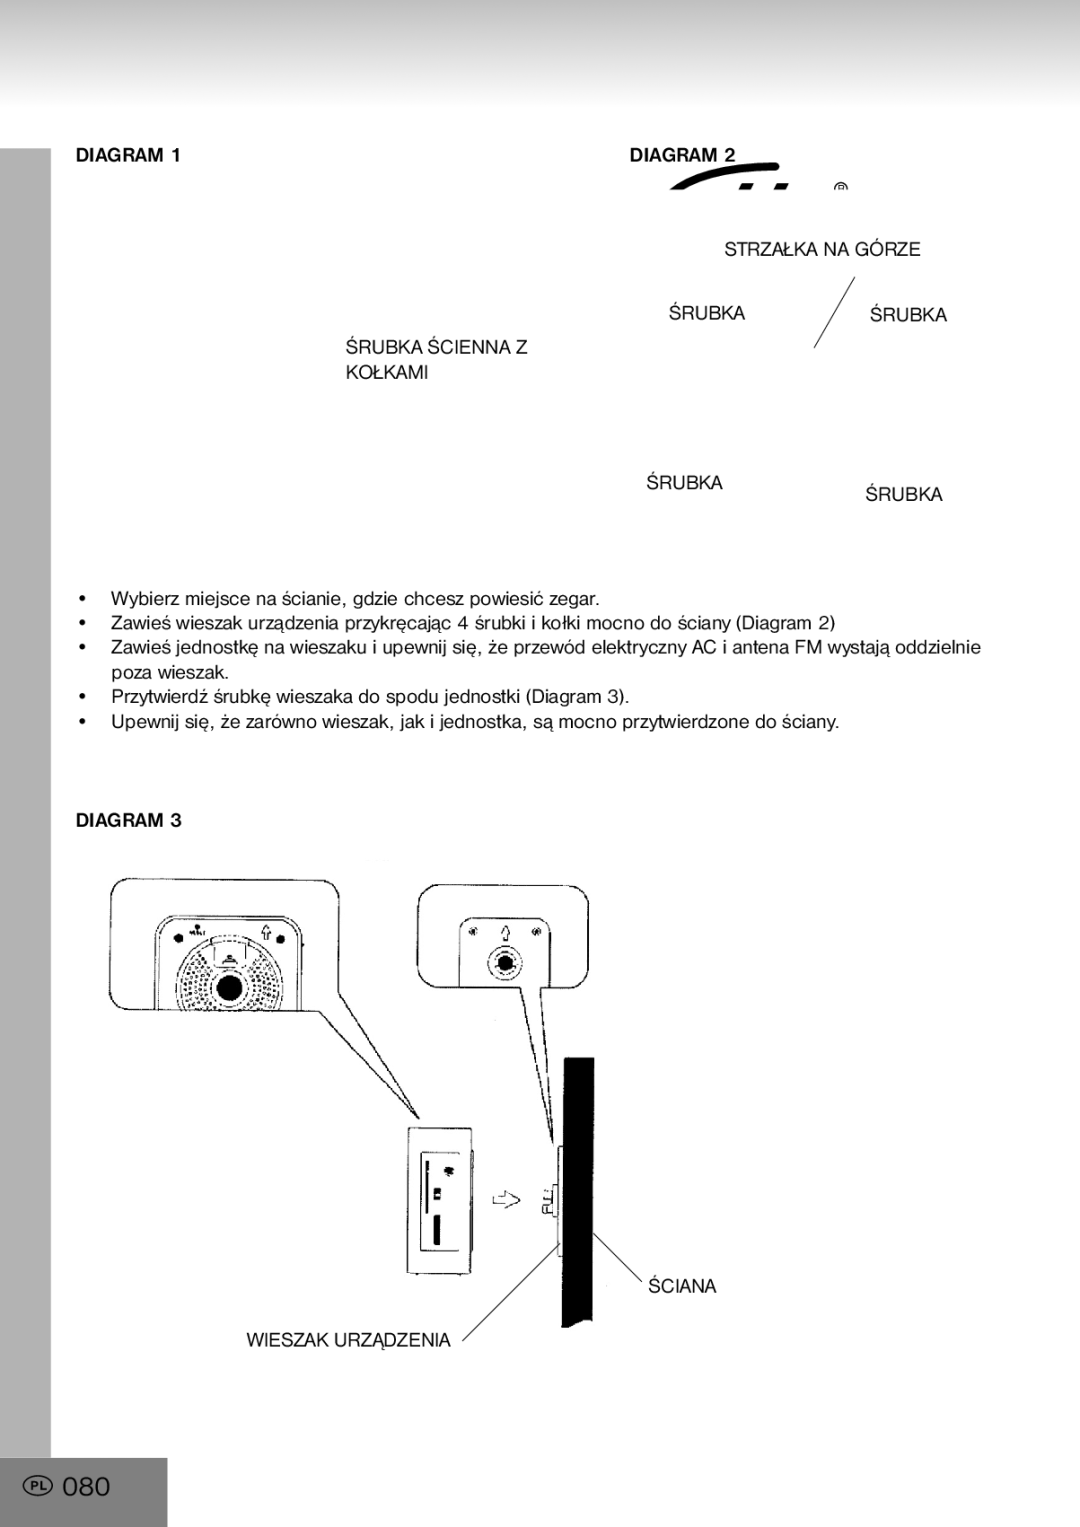 Elta 4556 manual 080, Diagram Ściana Wieszak Urządzenia 